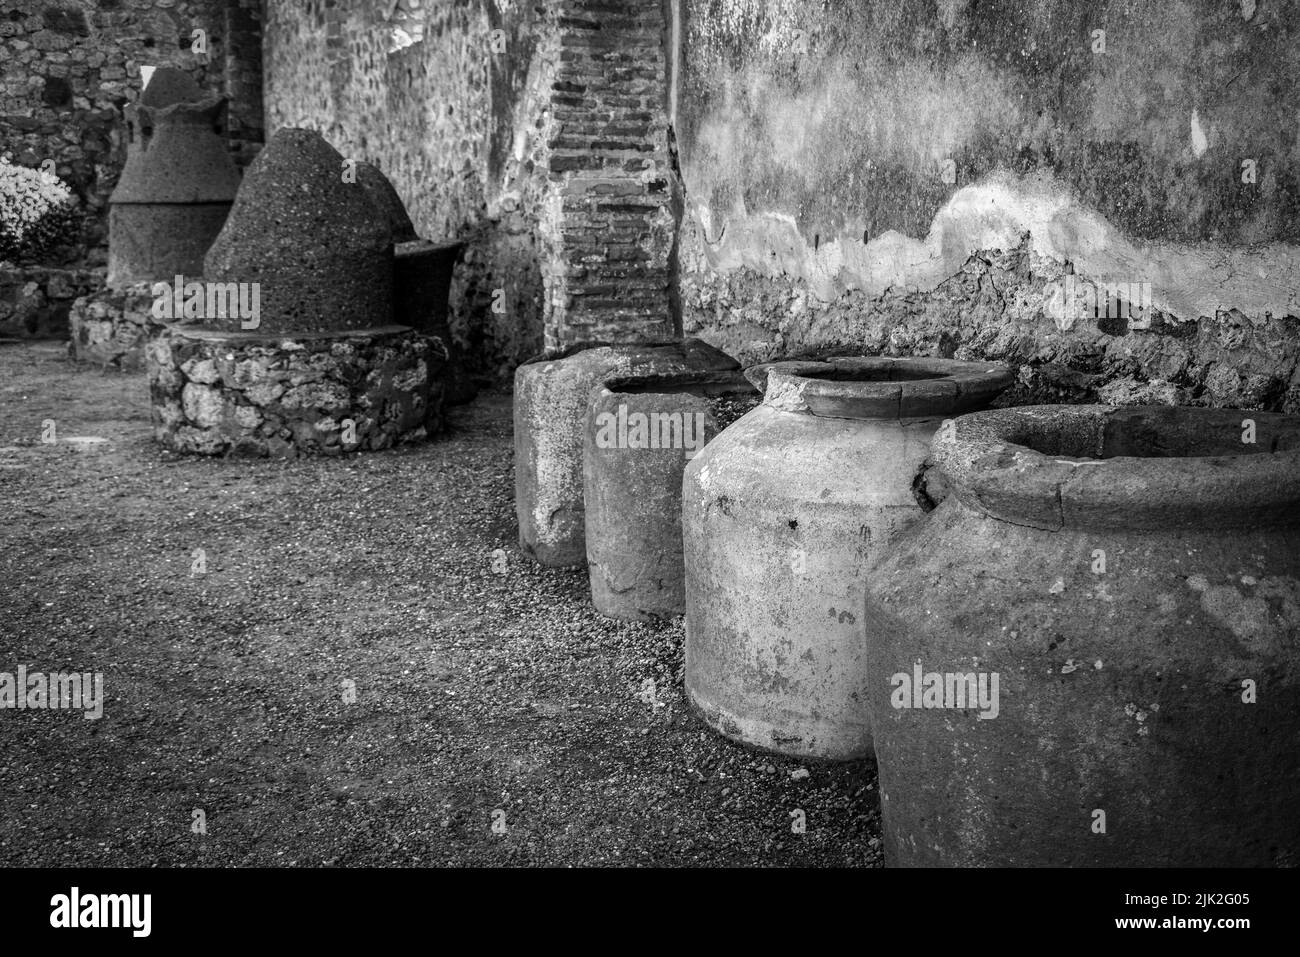 De grandes amphores en argile enterrées dans le sol d'un ancien entrepôt de Pompeian, dans le sud de l'Italie Banque D'Images